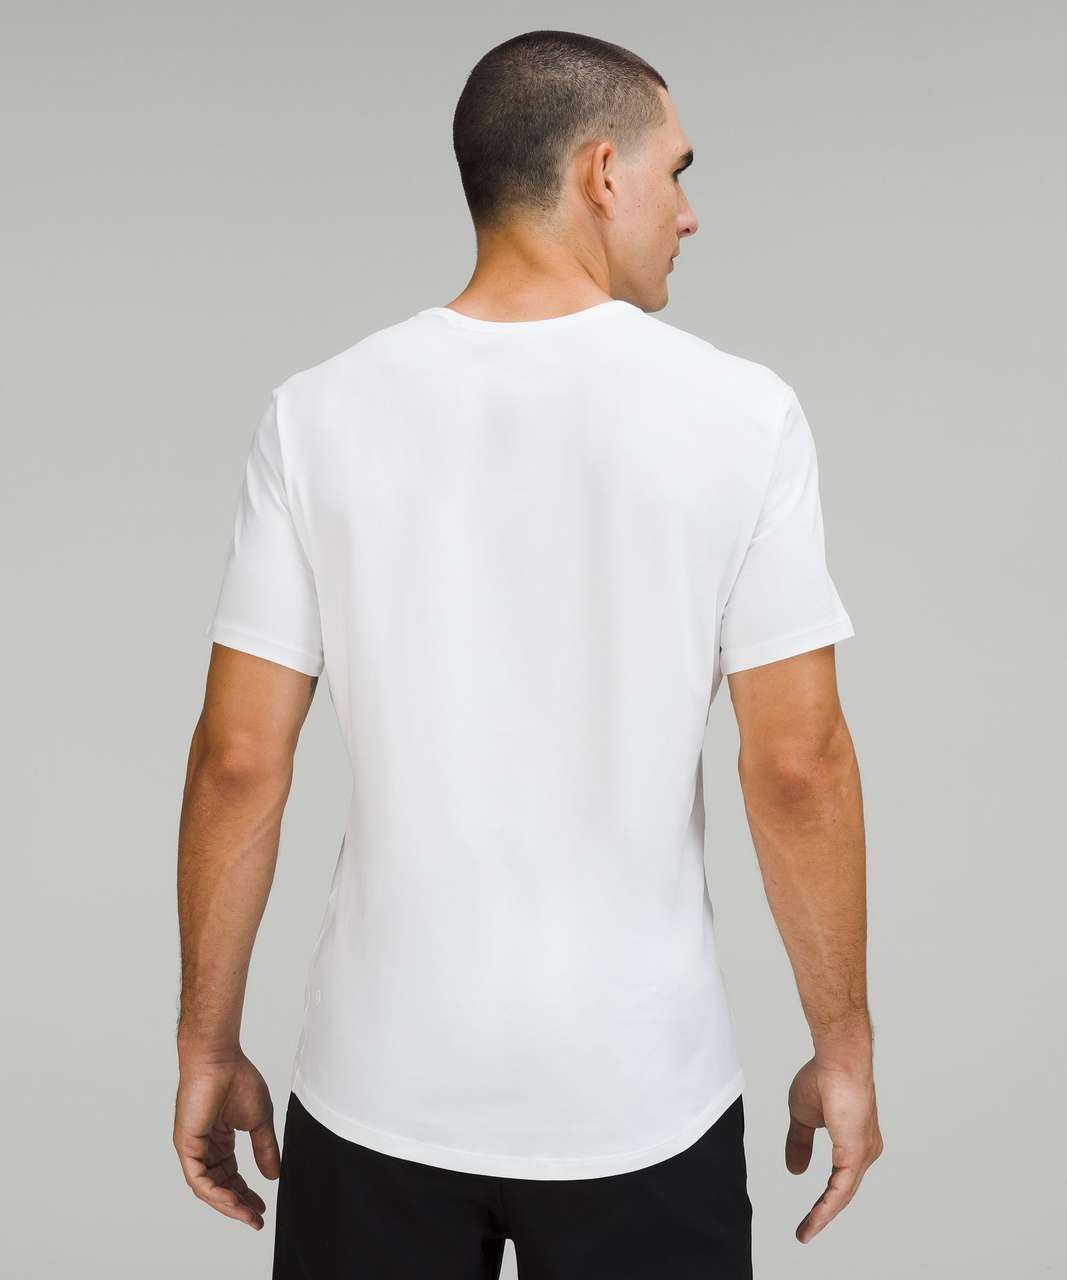 Lululemon 5 Year Basic T-Shirt *Atlanta - White